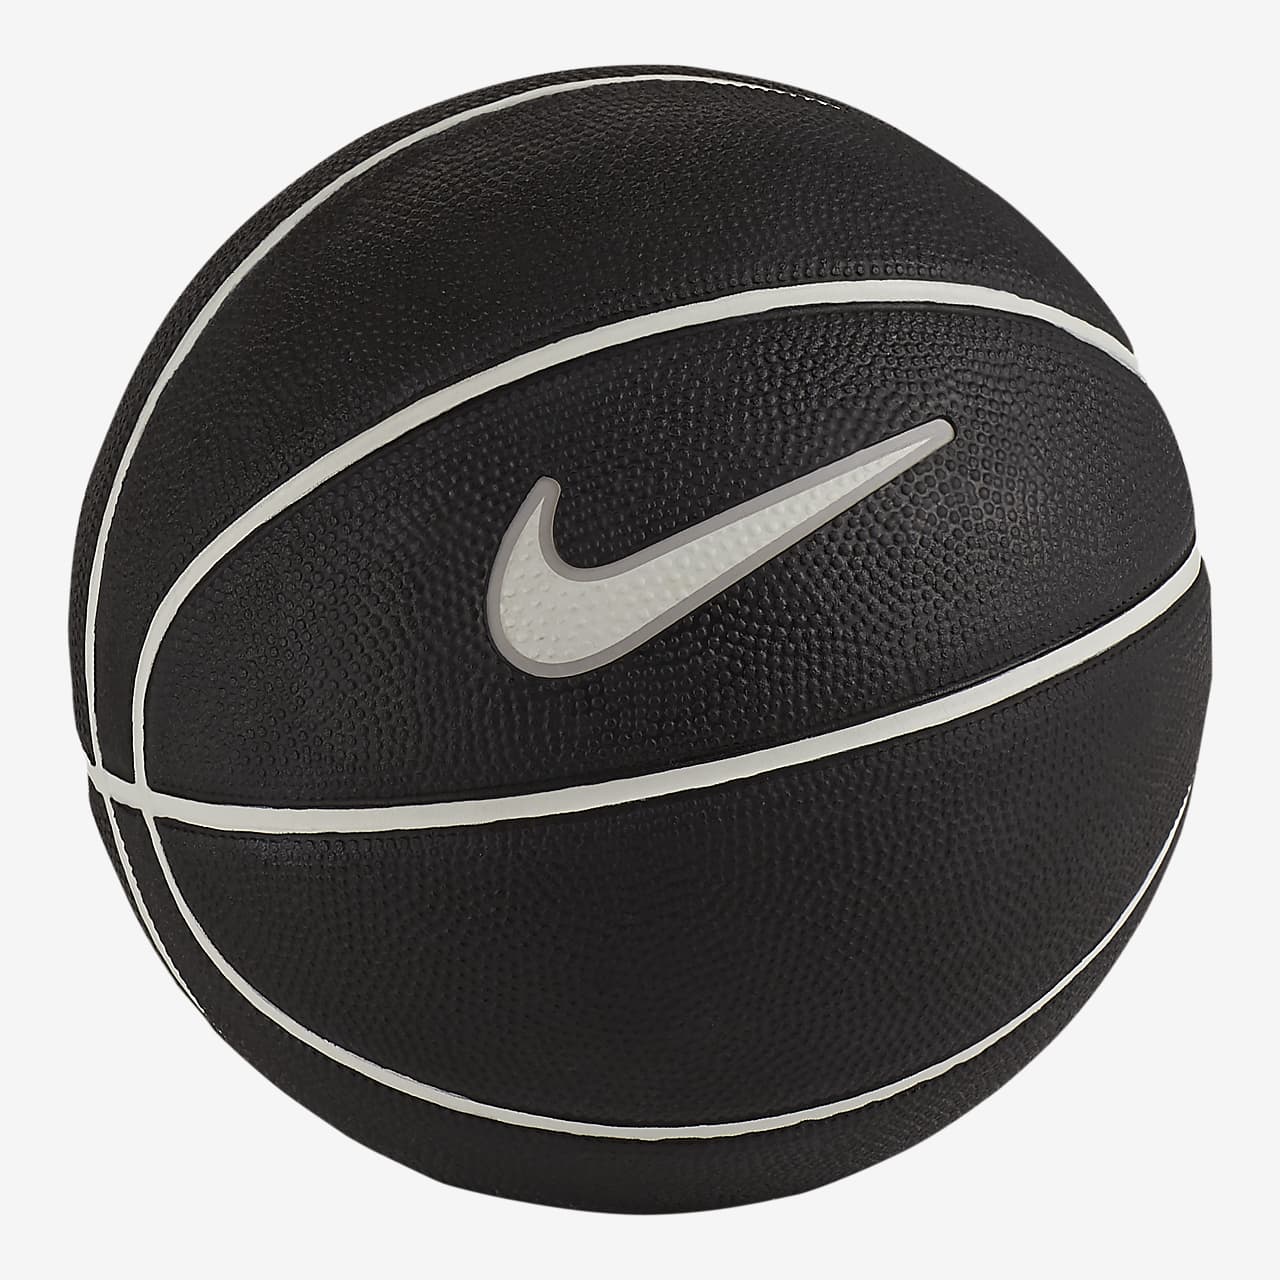 Nike Basketball.